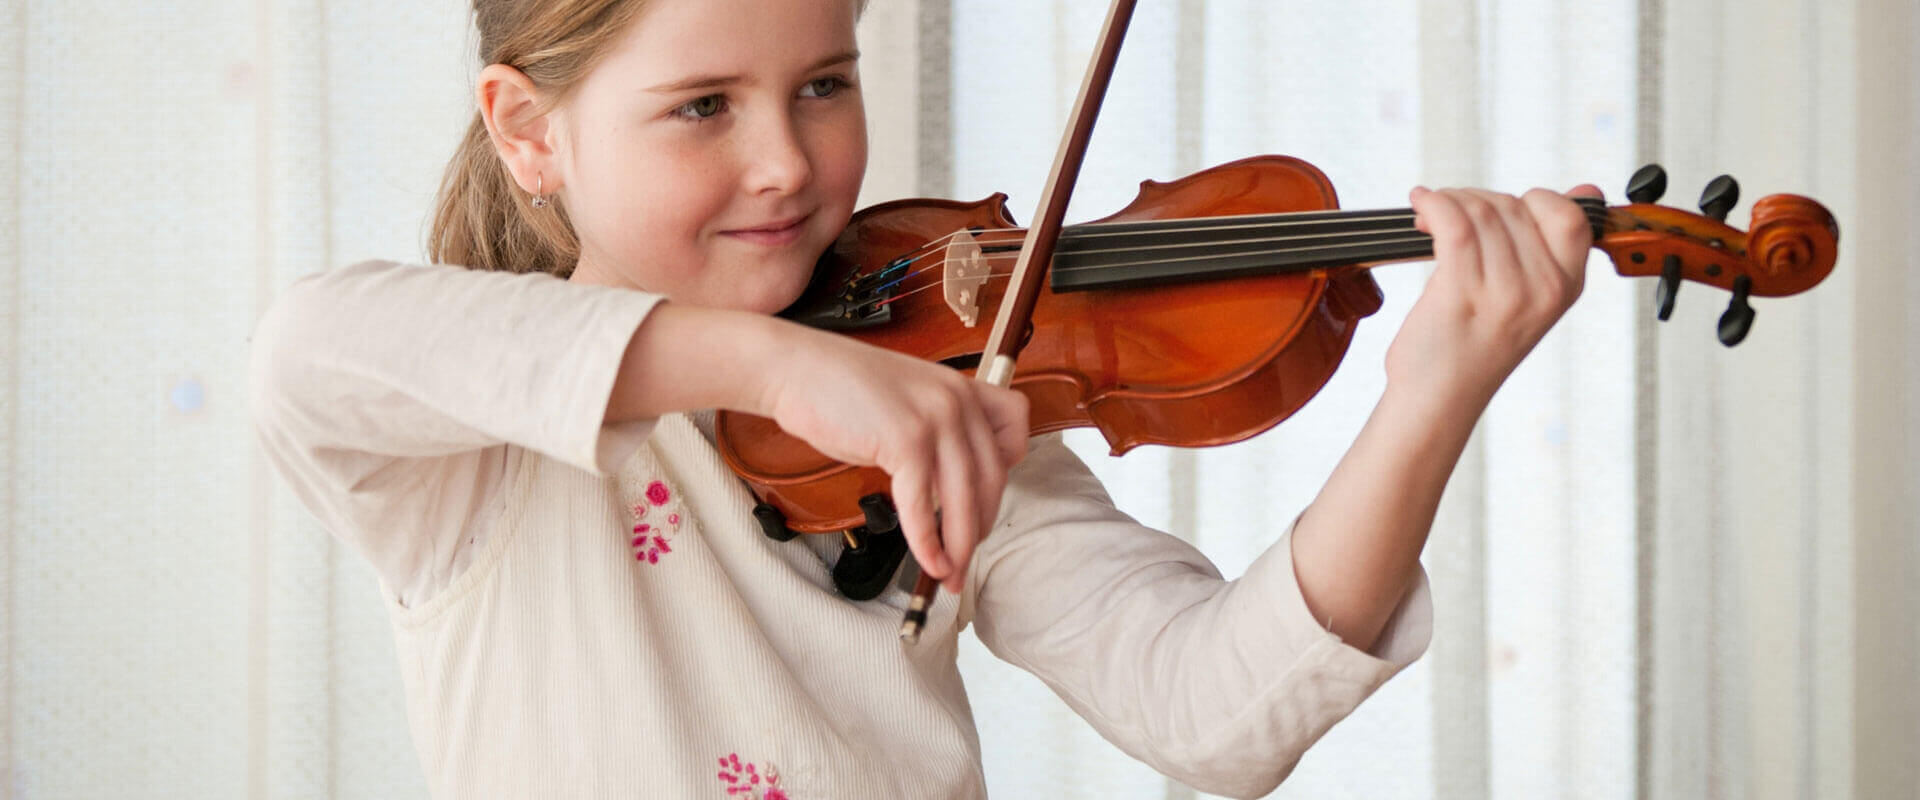 Violin Lessons Islandia, NY